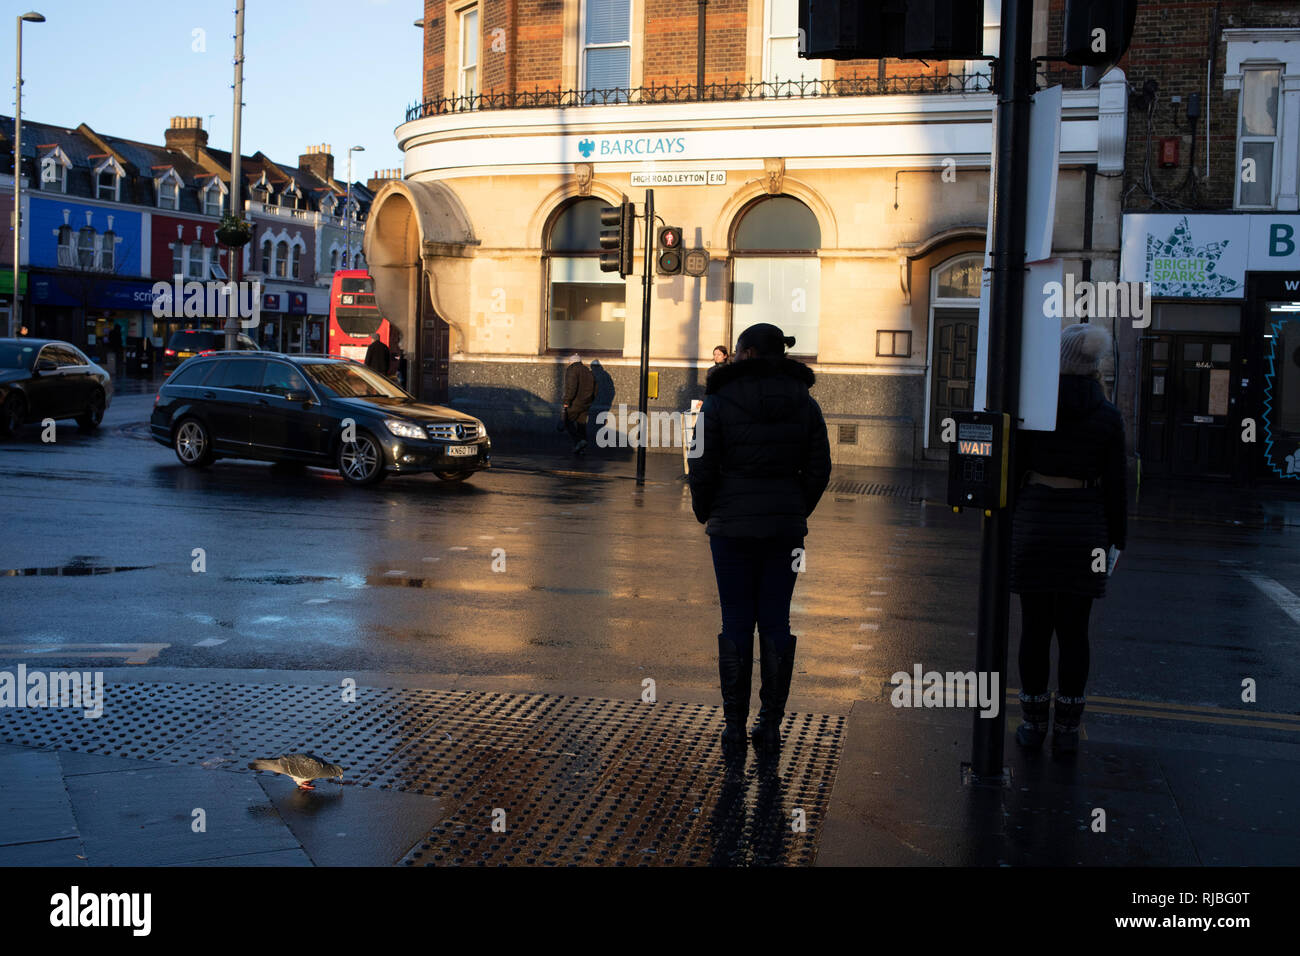 Auf der Straße beobachten, wie Leute über ihr tägliches Leben mit Sonnenschein und Reflexionen auf dem Bürgersteig an einem regnerischen Tag gehen in Leytonstone im Osten von London, Vereinigtes Königreich. Leytonstone ist ein Gebiet im Osten von London, und ein Teil der Londoner Stadtteil Waltham Forest. Stockfoto